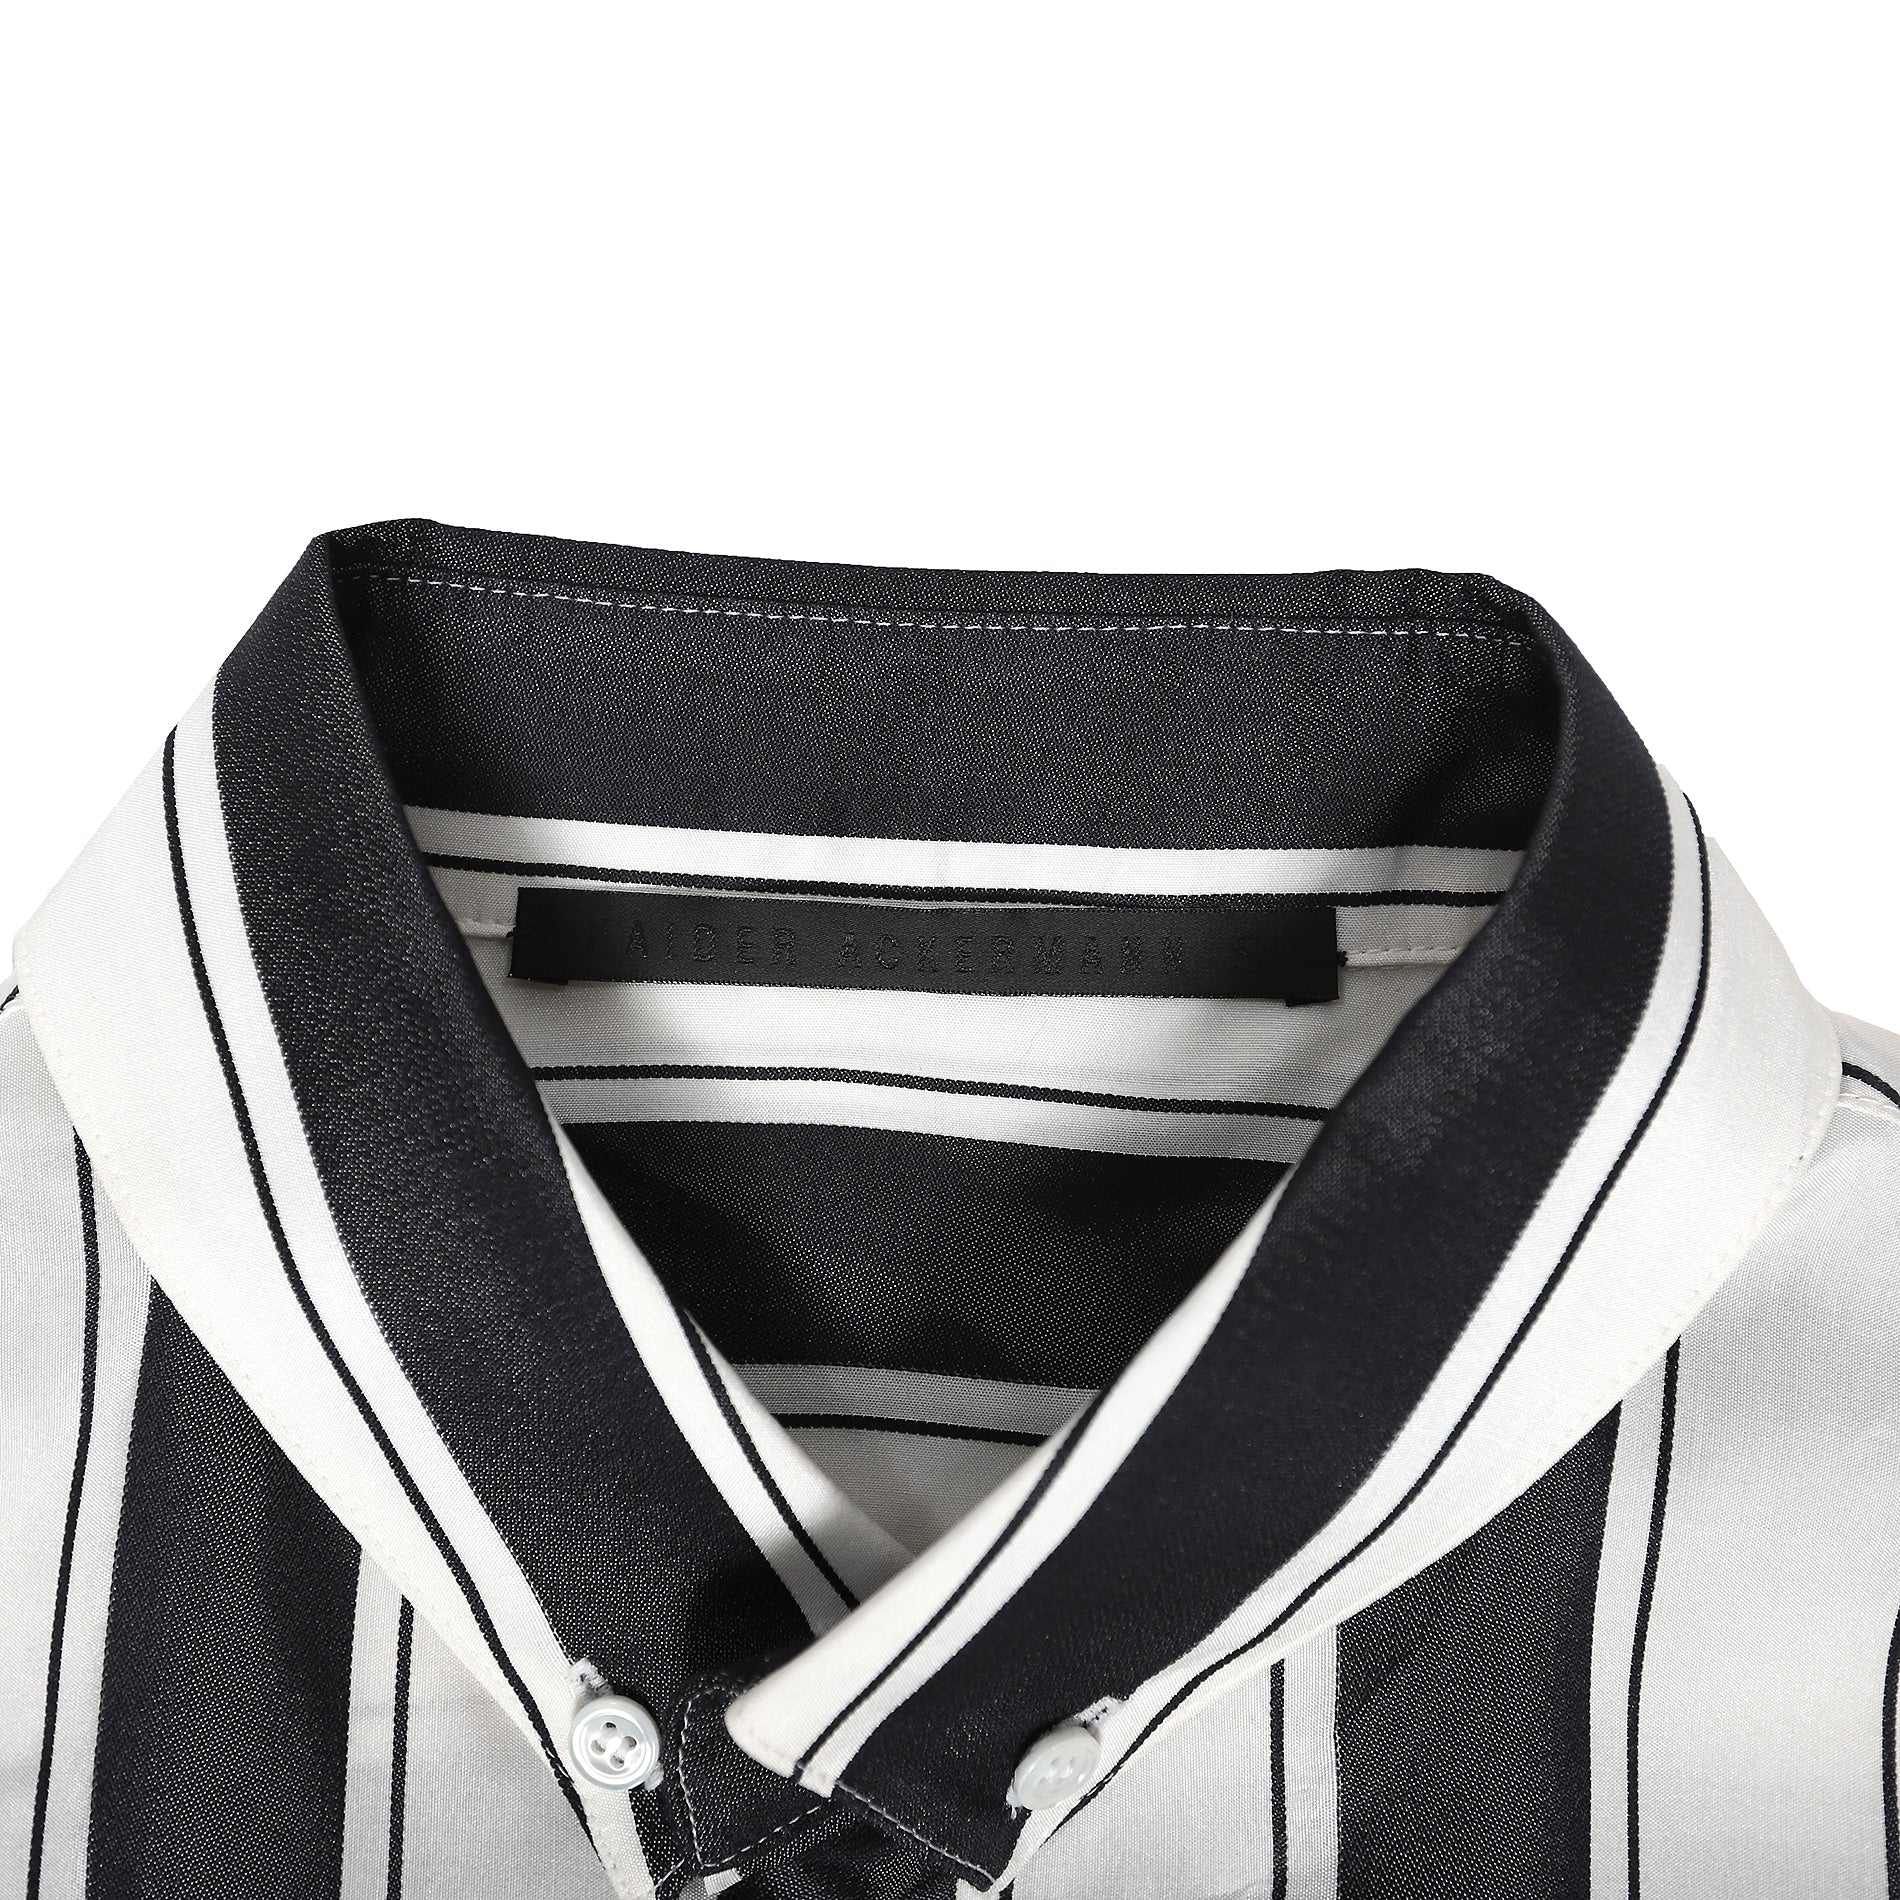 Haider Ackermann SS17 Striped Shortsleeve Shirt - Ākaibu Store